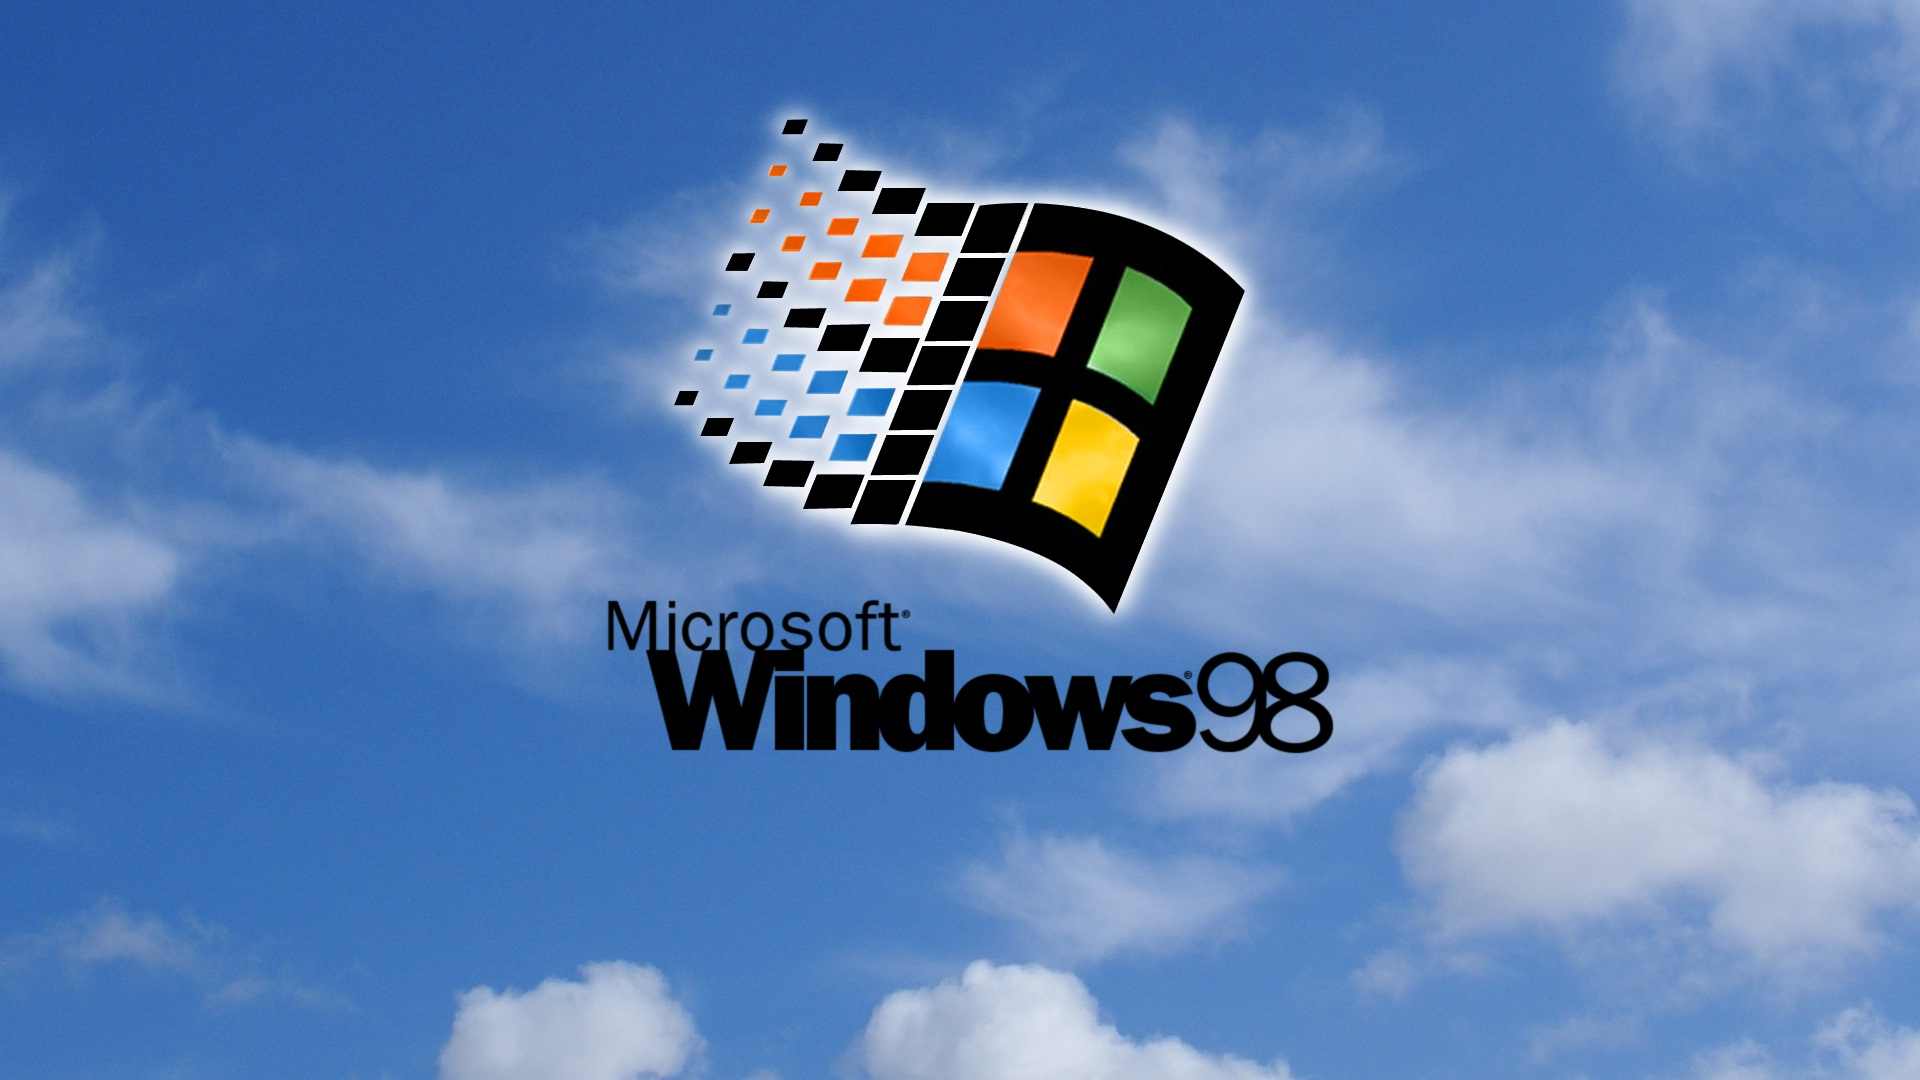 Tại Wallpaper Cave, chúng tôi cung cấp một bộ sưu tập hình nền Windows 98 với hàng ngàn tác phẩm đẹp mắt và độc đáo. Bạn sẽ được xem các hình nền với chất lượng cao và đầy sáng tạo. Những tấm hình này sẽ đem lại cho không gian máy tính của bạn một sự mới mẻ và phong cách. Hãy truy cập ngay hôm nay để tìm kiếm bức ảnh độc nhất và phù hợp nhất cho mình.